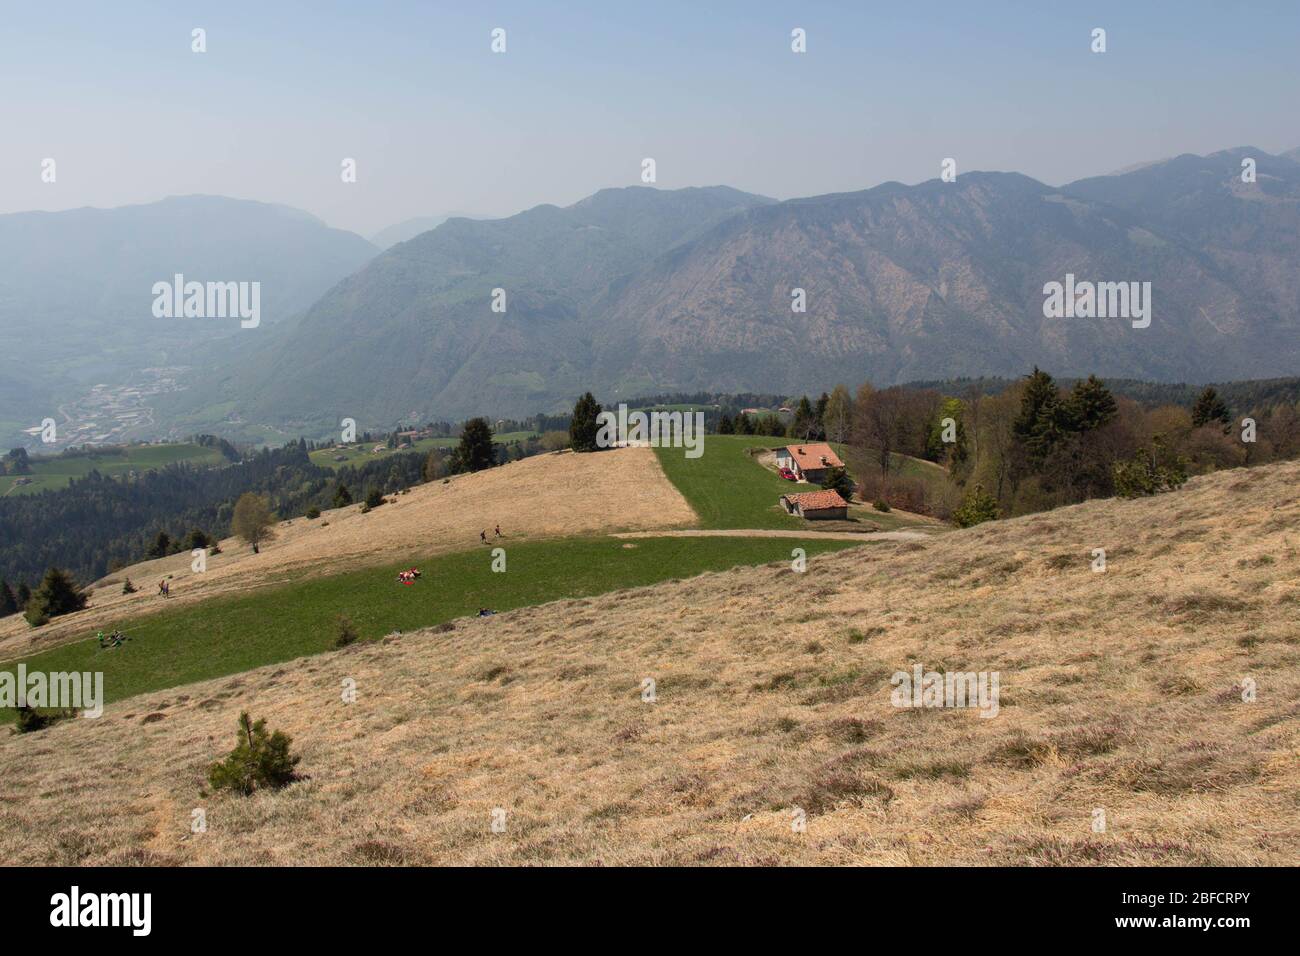 La vista del contryside rurale in montagna. Campi agricoli su colline con montagne sullo sfondo. Foto Stock